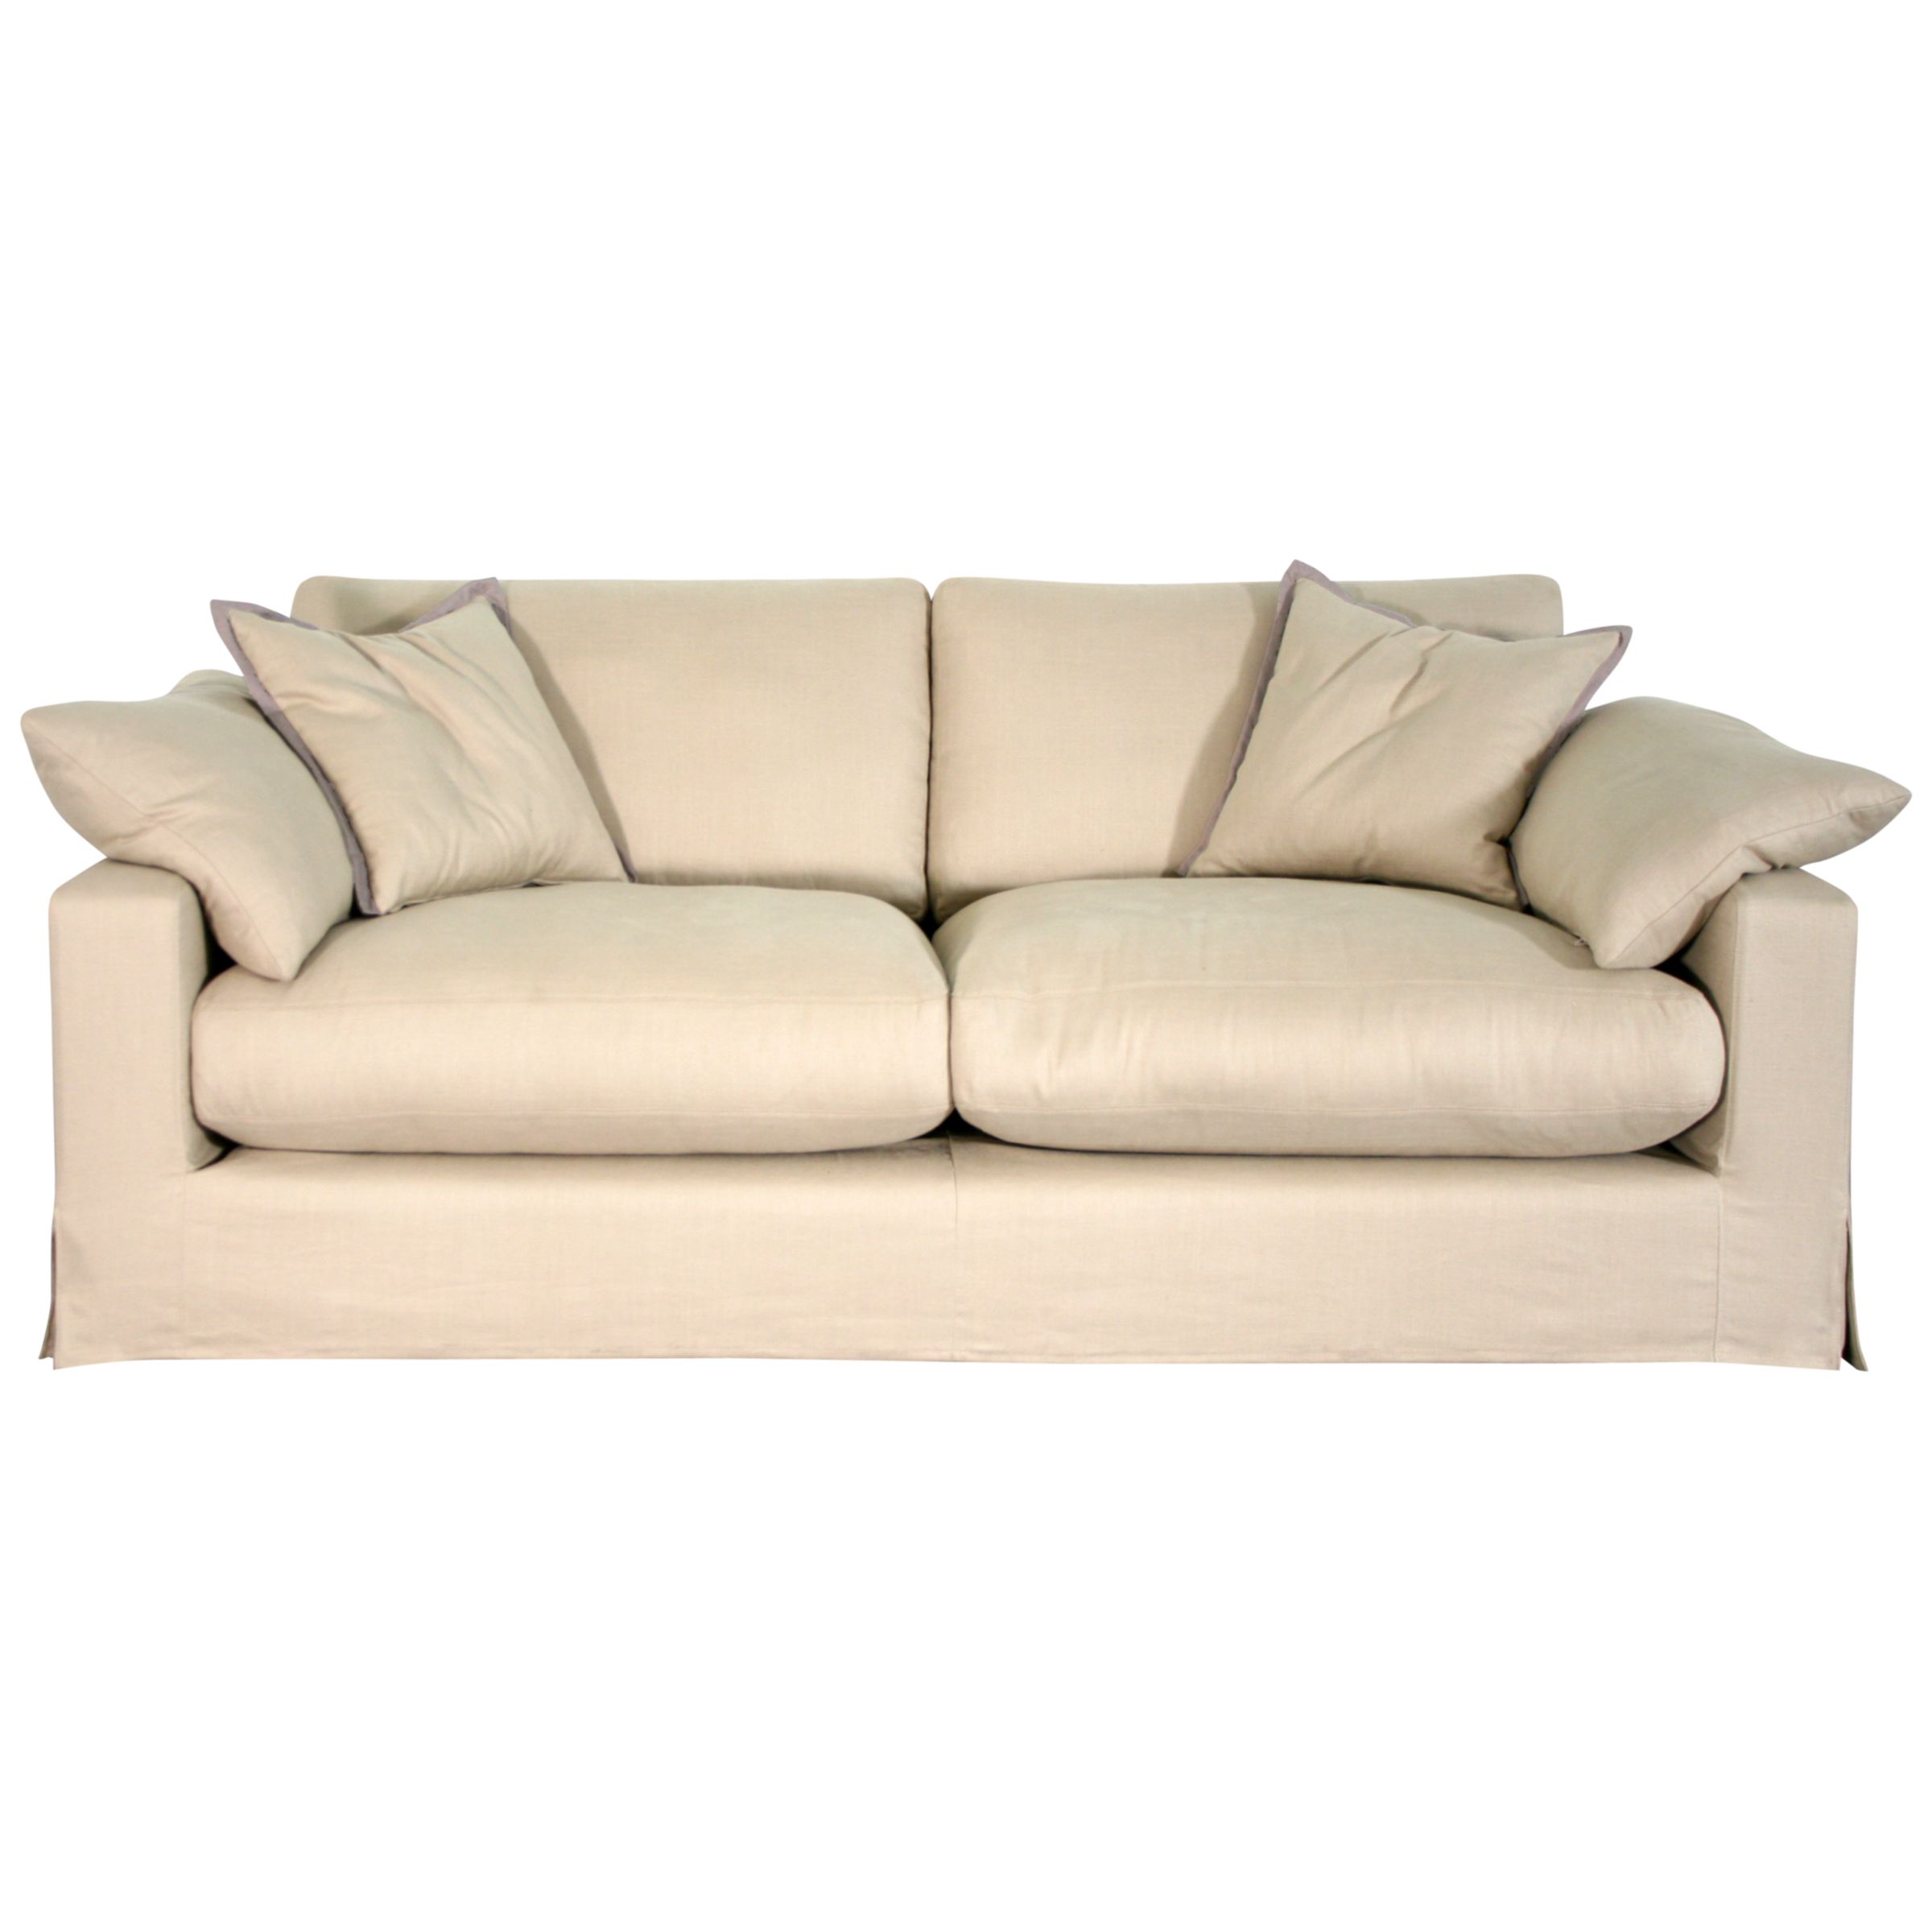 John Lewis Belle Standard Back Large Sofa, Latte, width 192cm